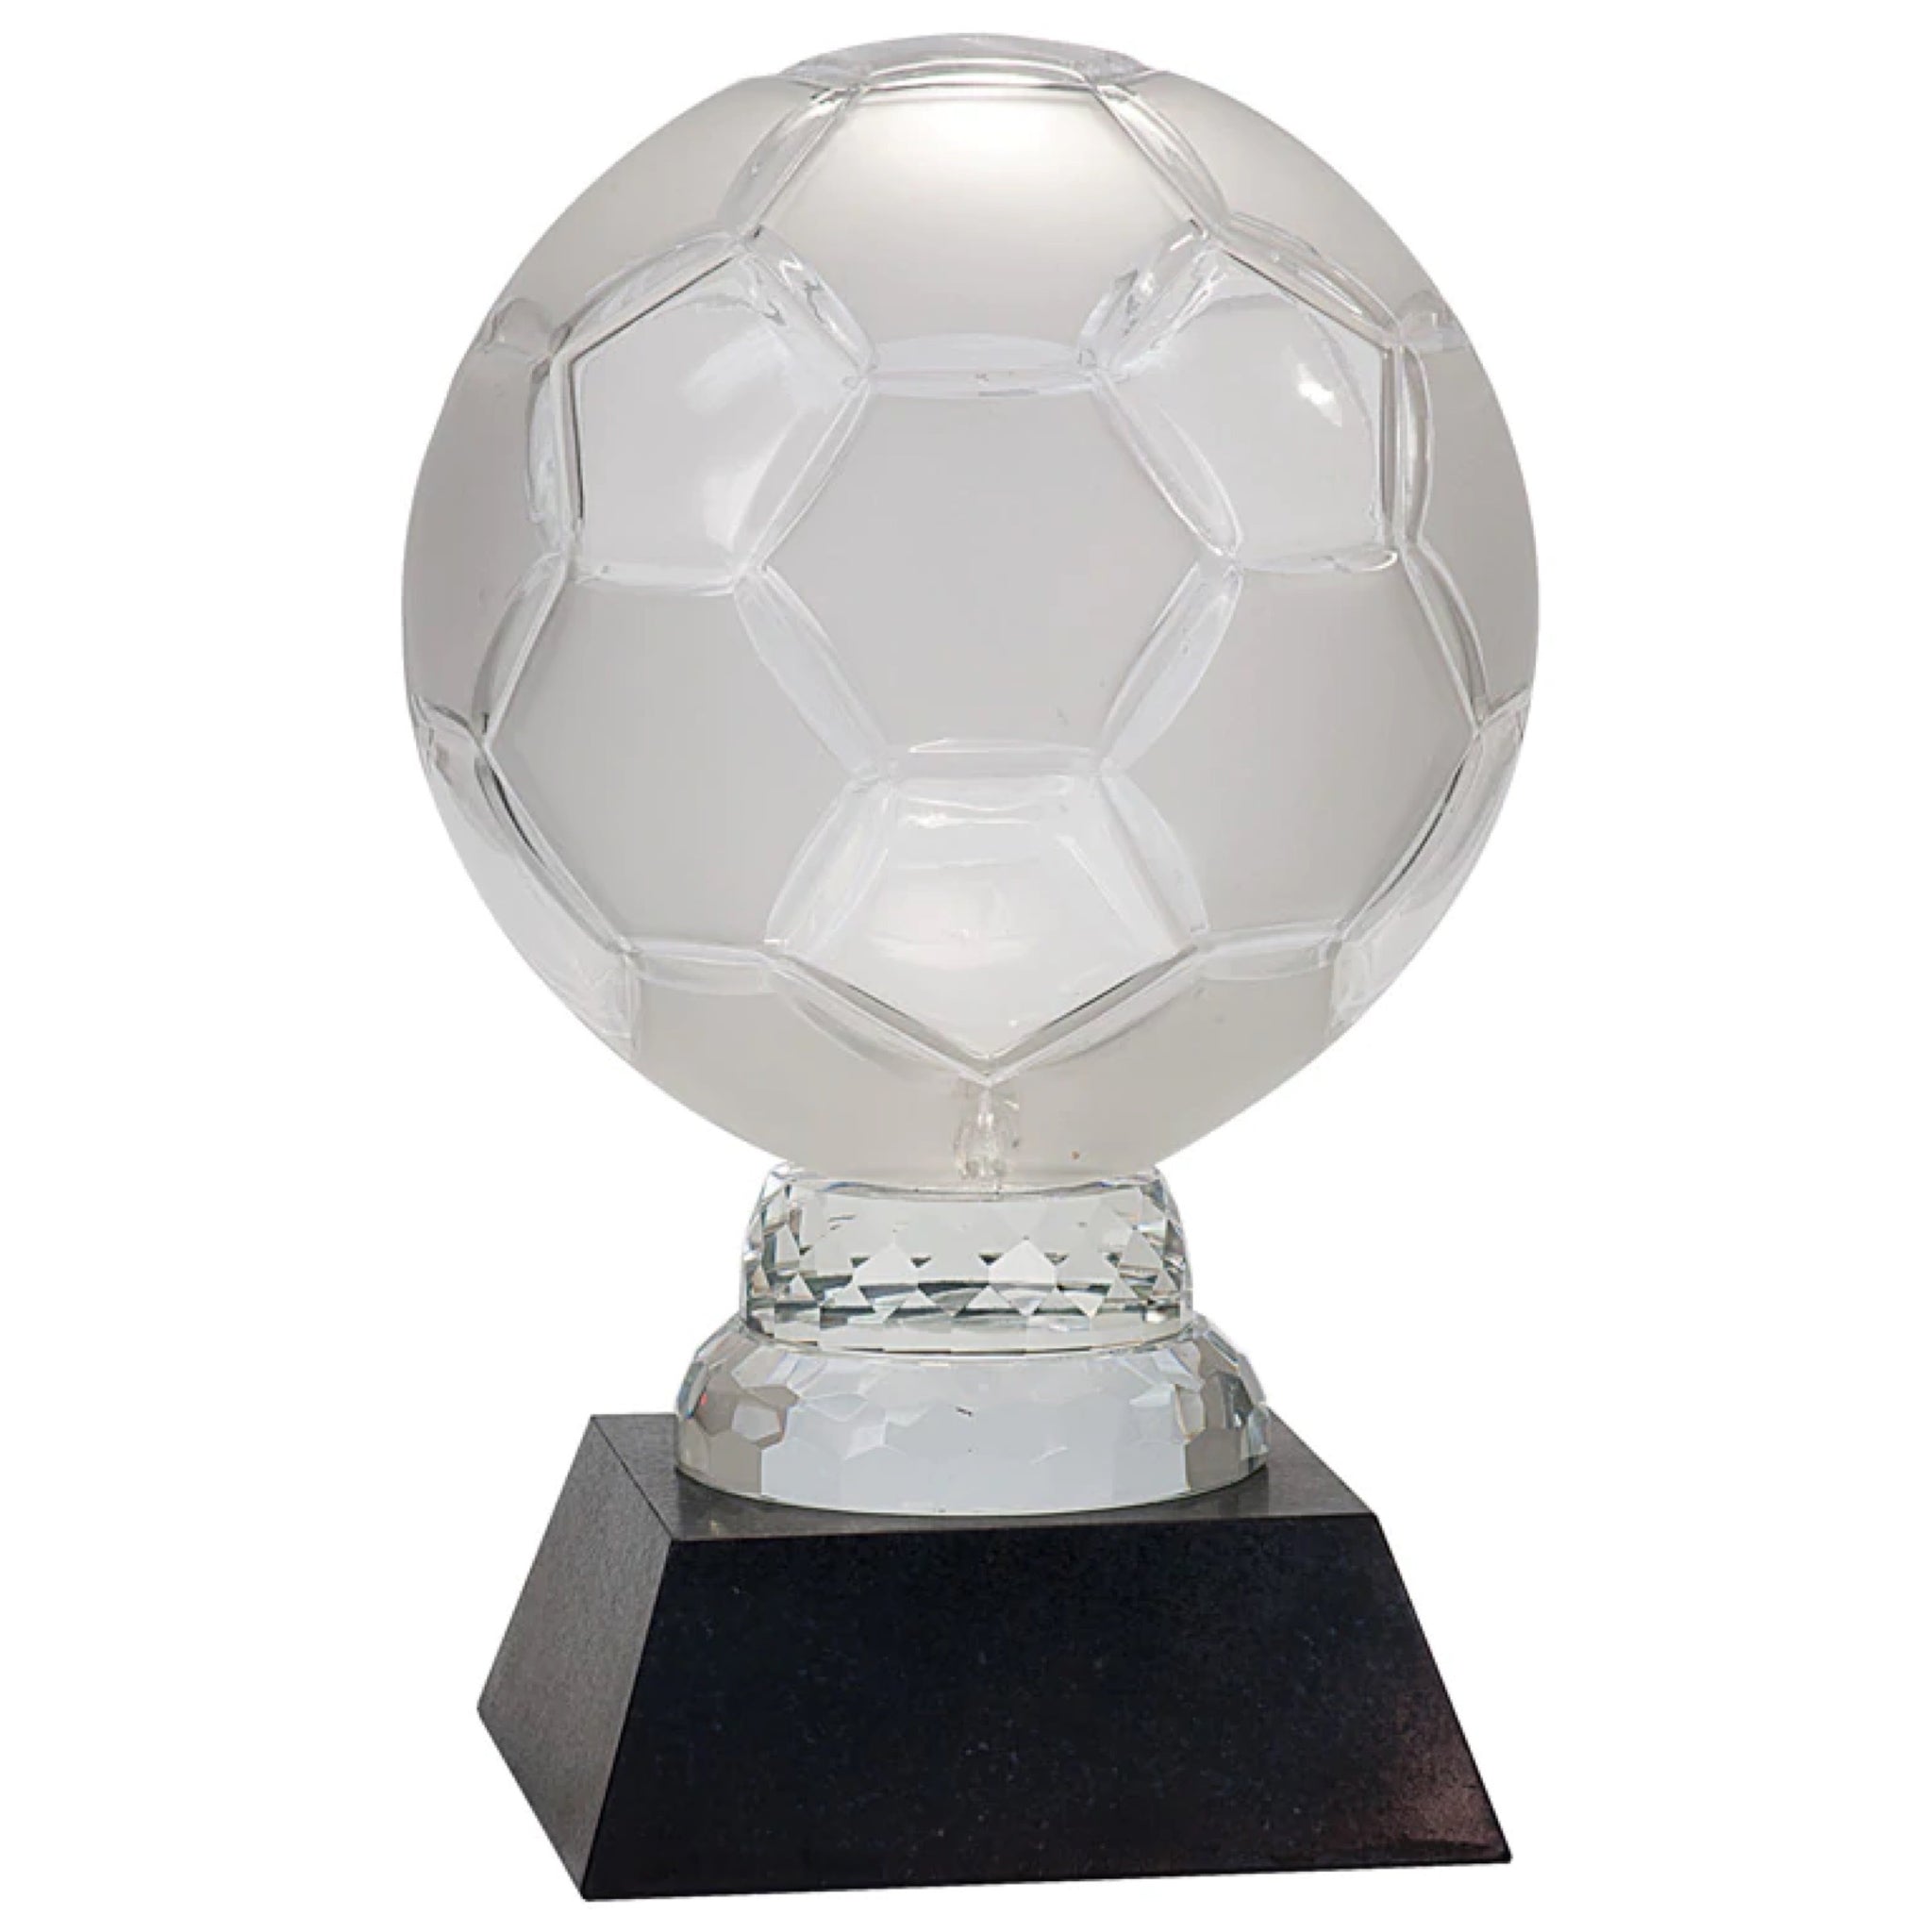 Glass Soccer Ball Trophy